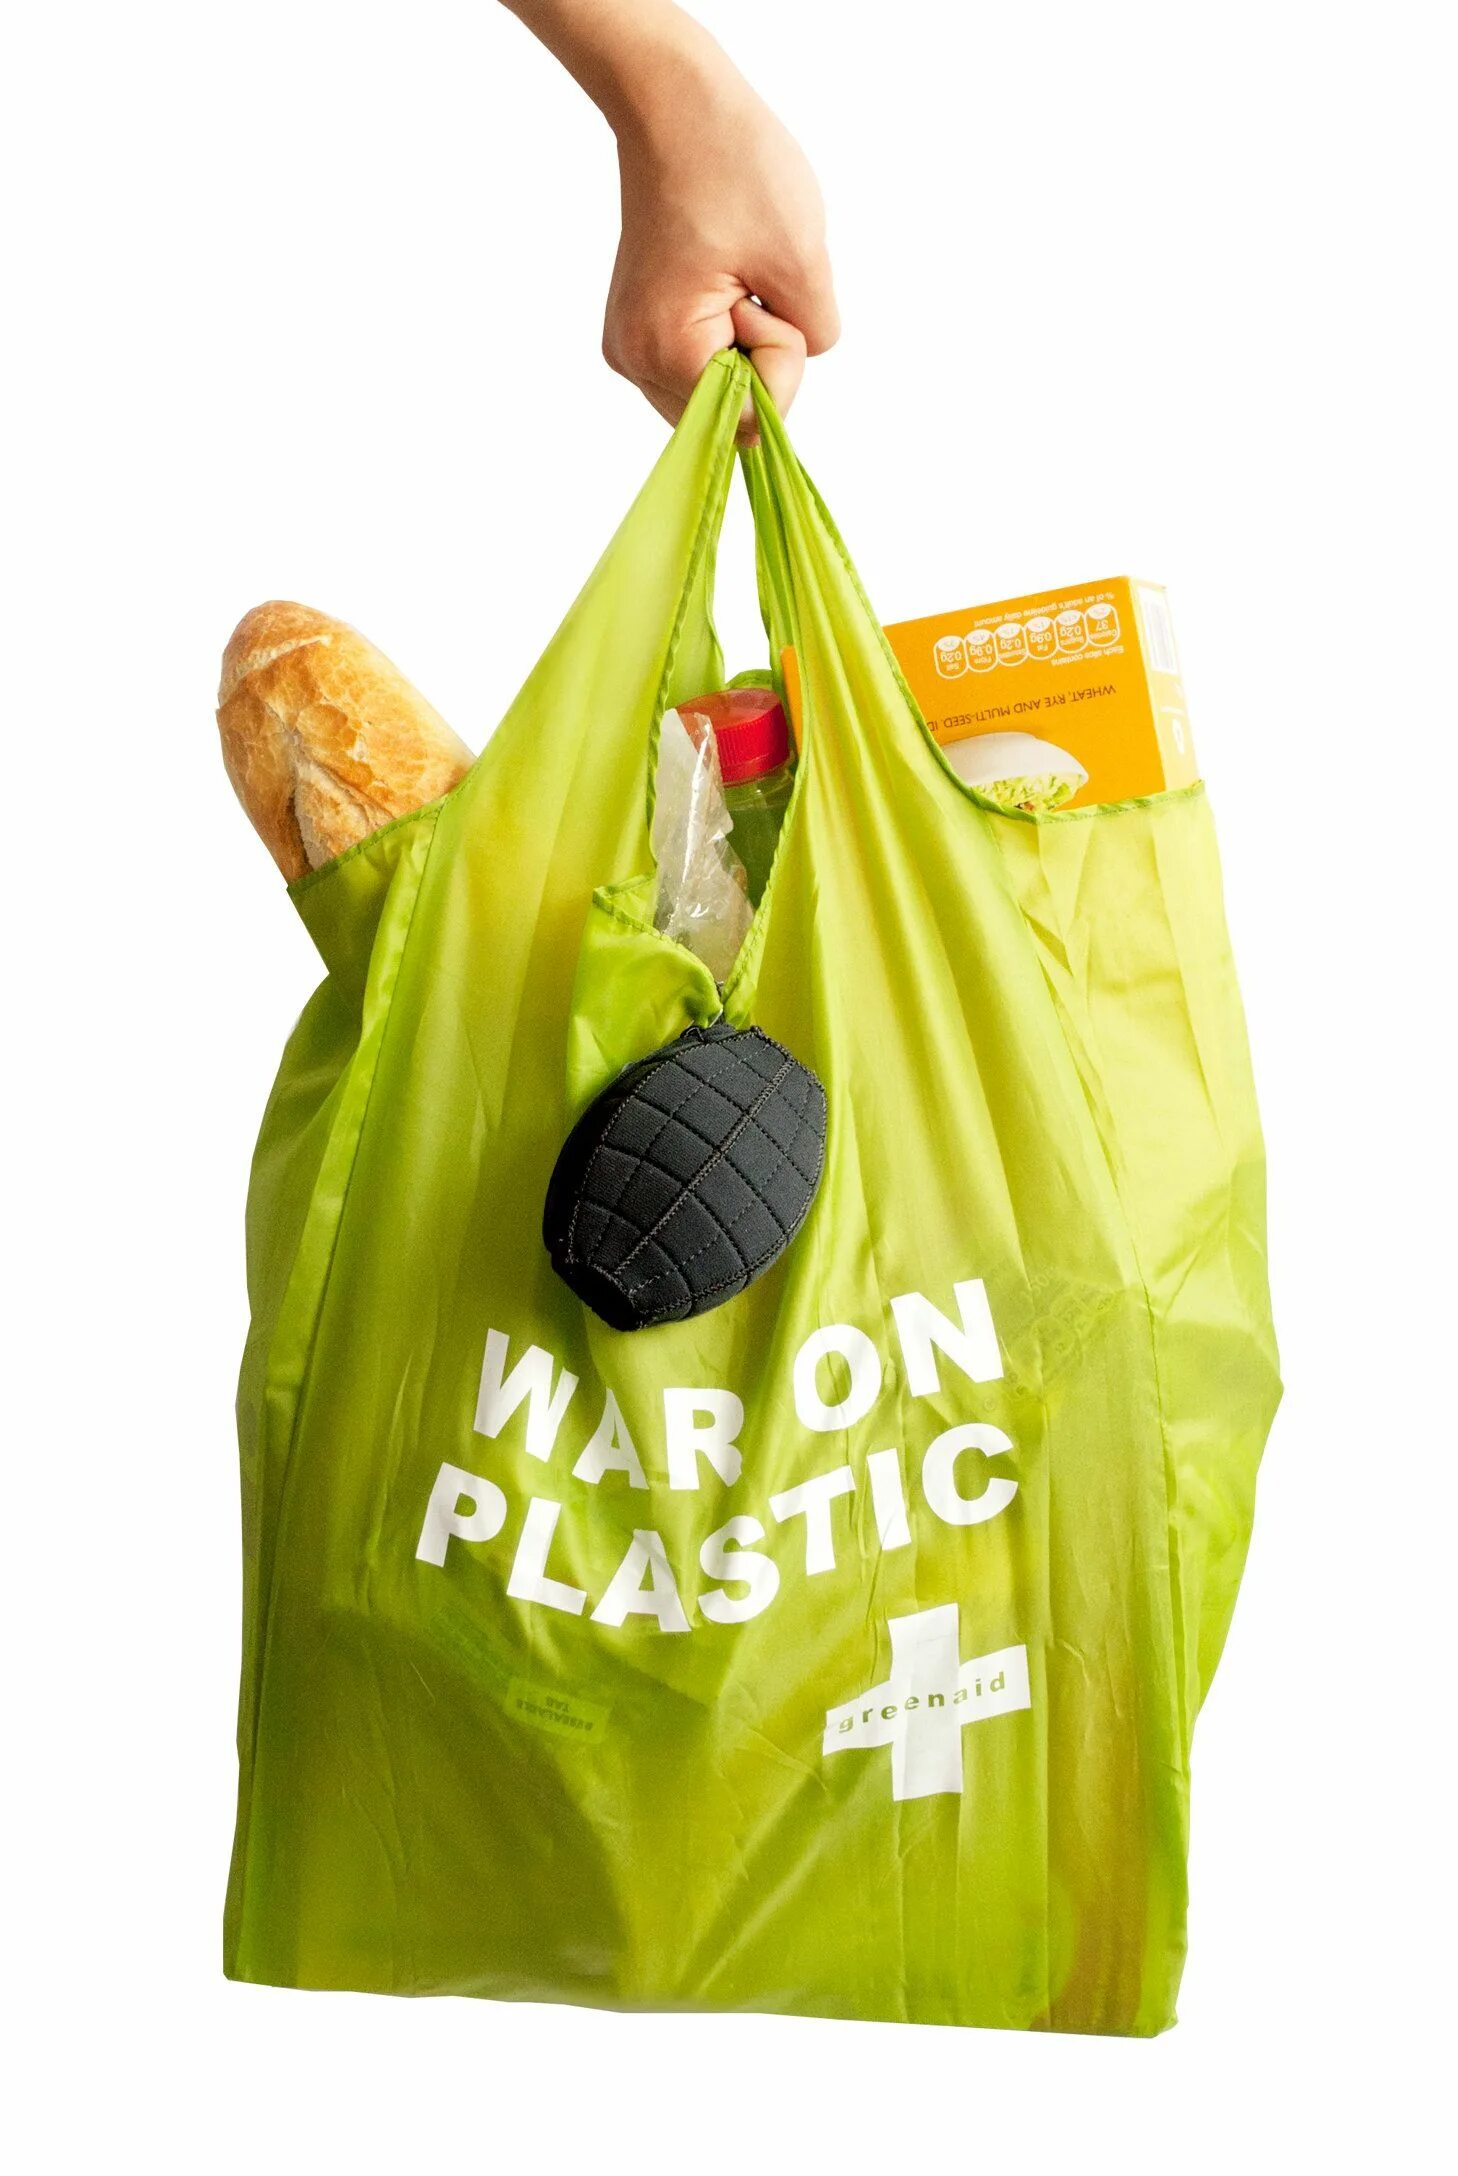 Visual полный пакет. Пакет с продуктами. Пластиковый пакет. Сумка с продуктами. Пакеты для продуктов.